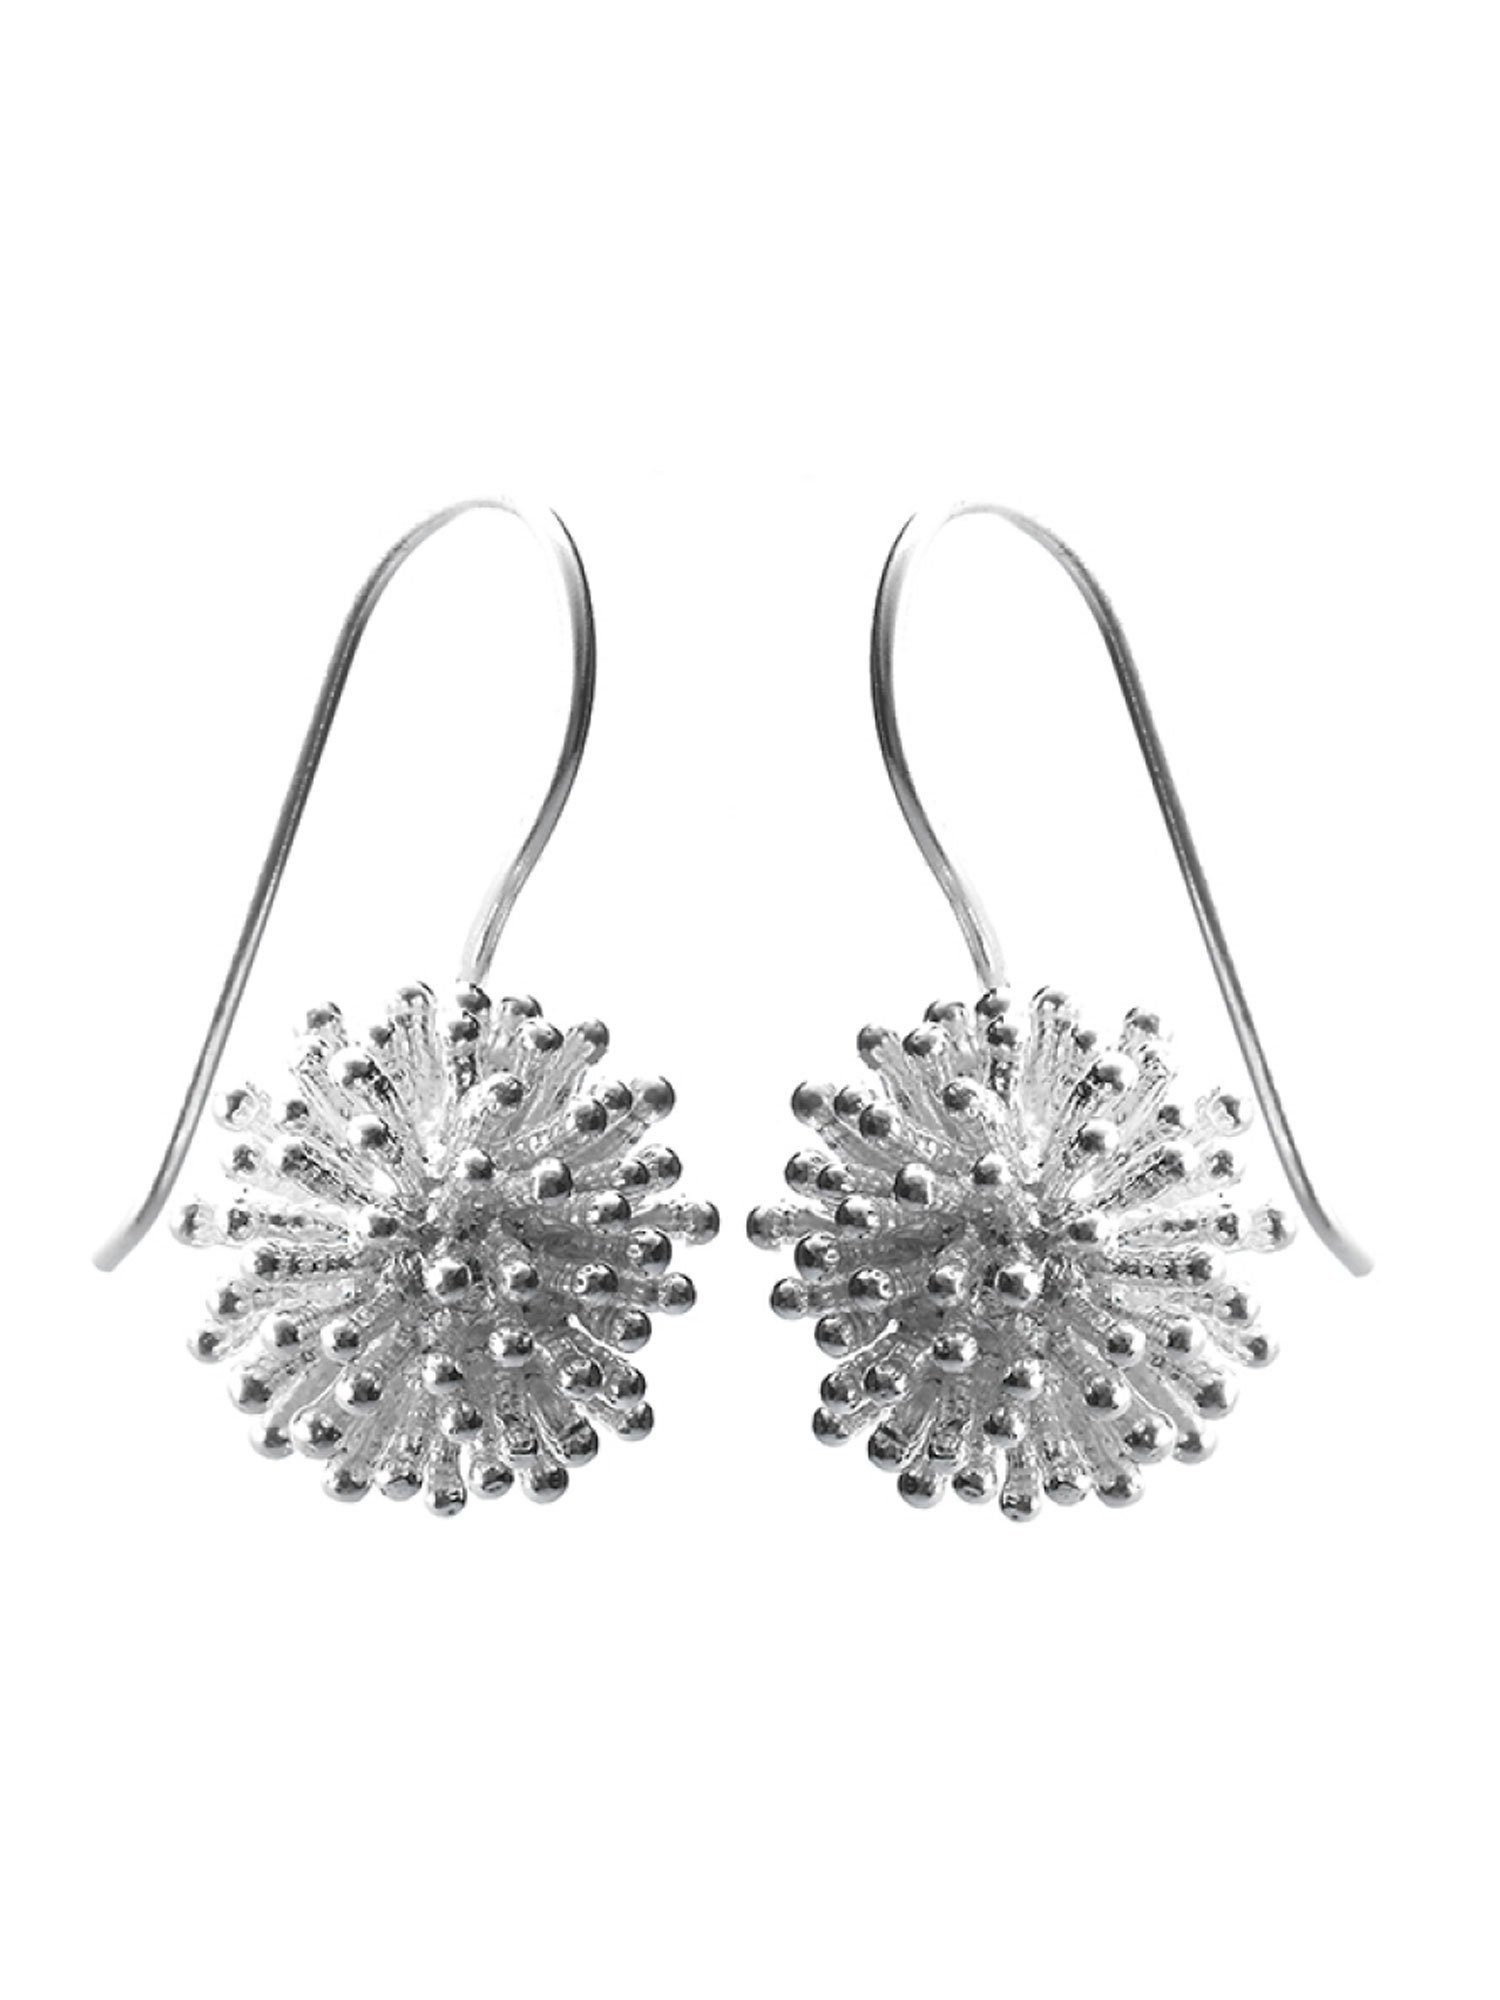 Silber Silber Ohrringe Ohrringe 925 - 925 poliert Igel Adelia´s Ohrhänger, Ohrhänger Paar Sterling